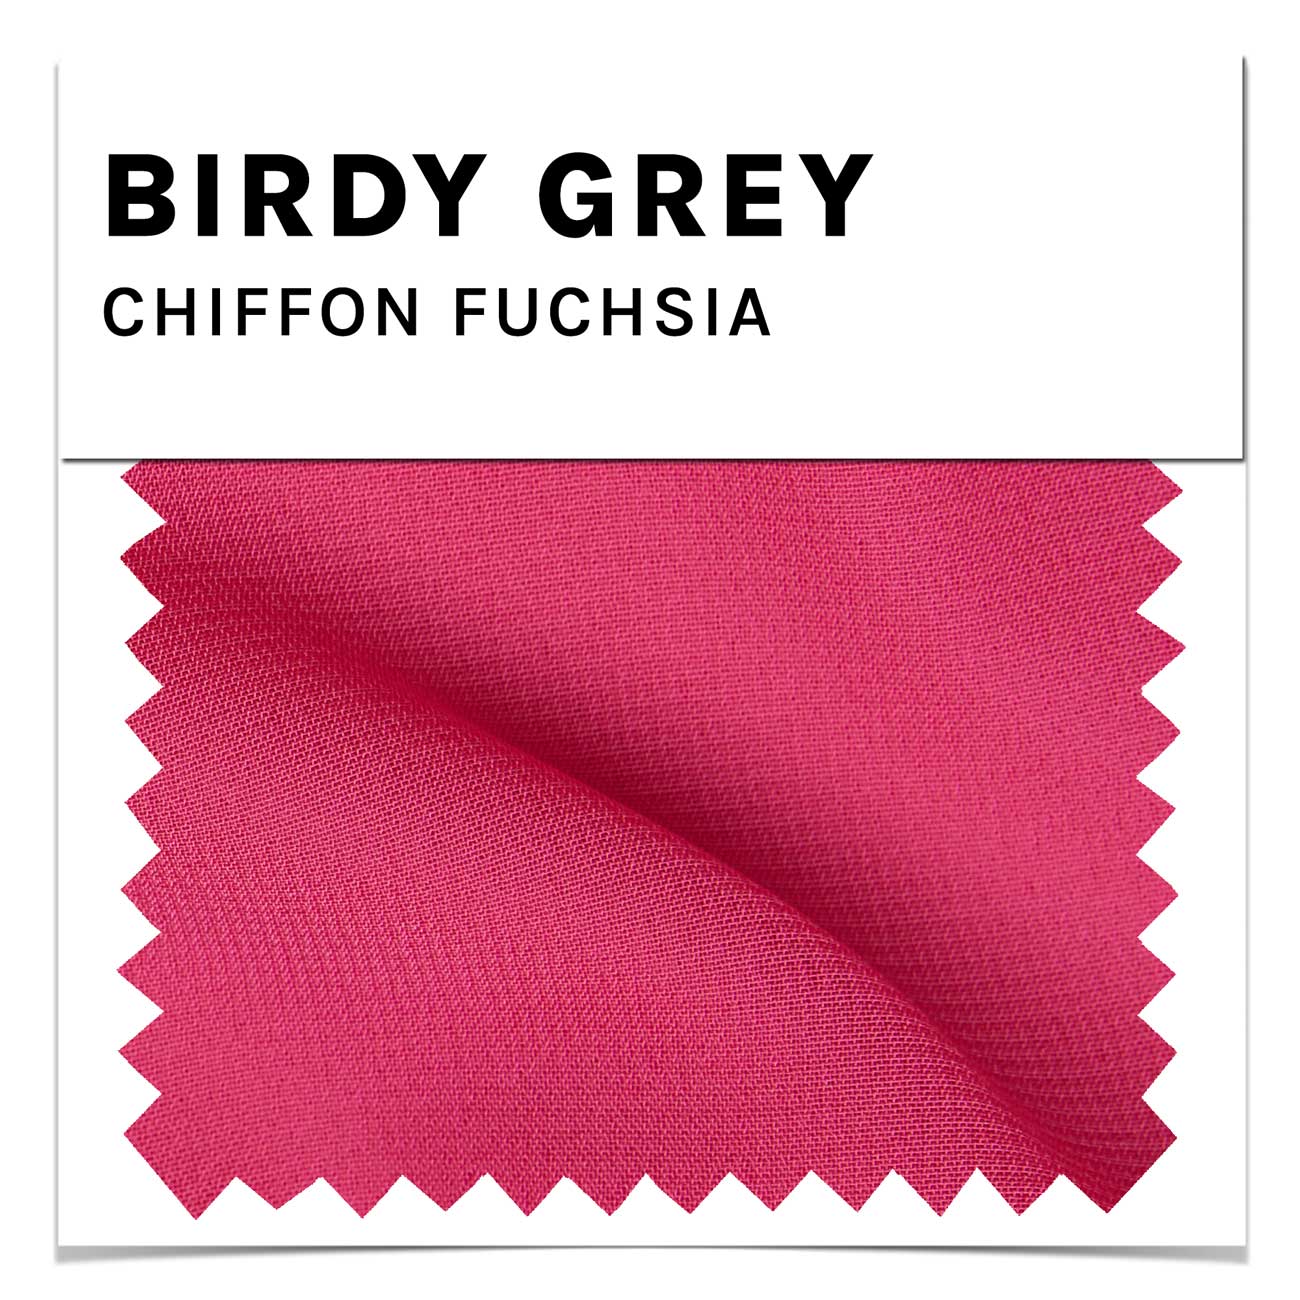 Fuchsia Chiffon Swatch by Birdy Grey